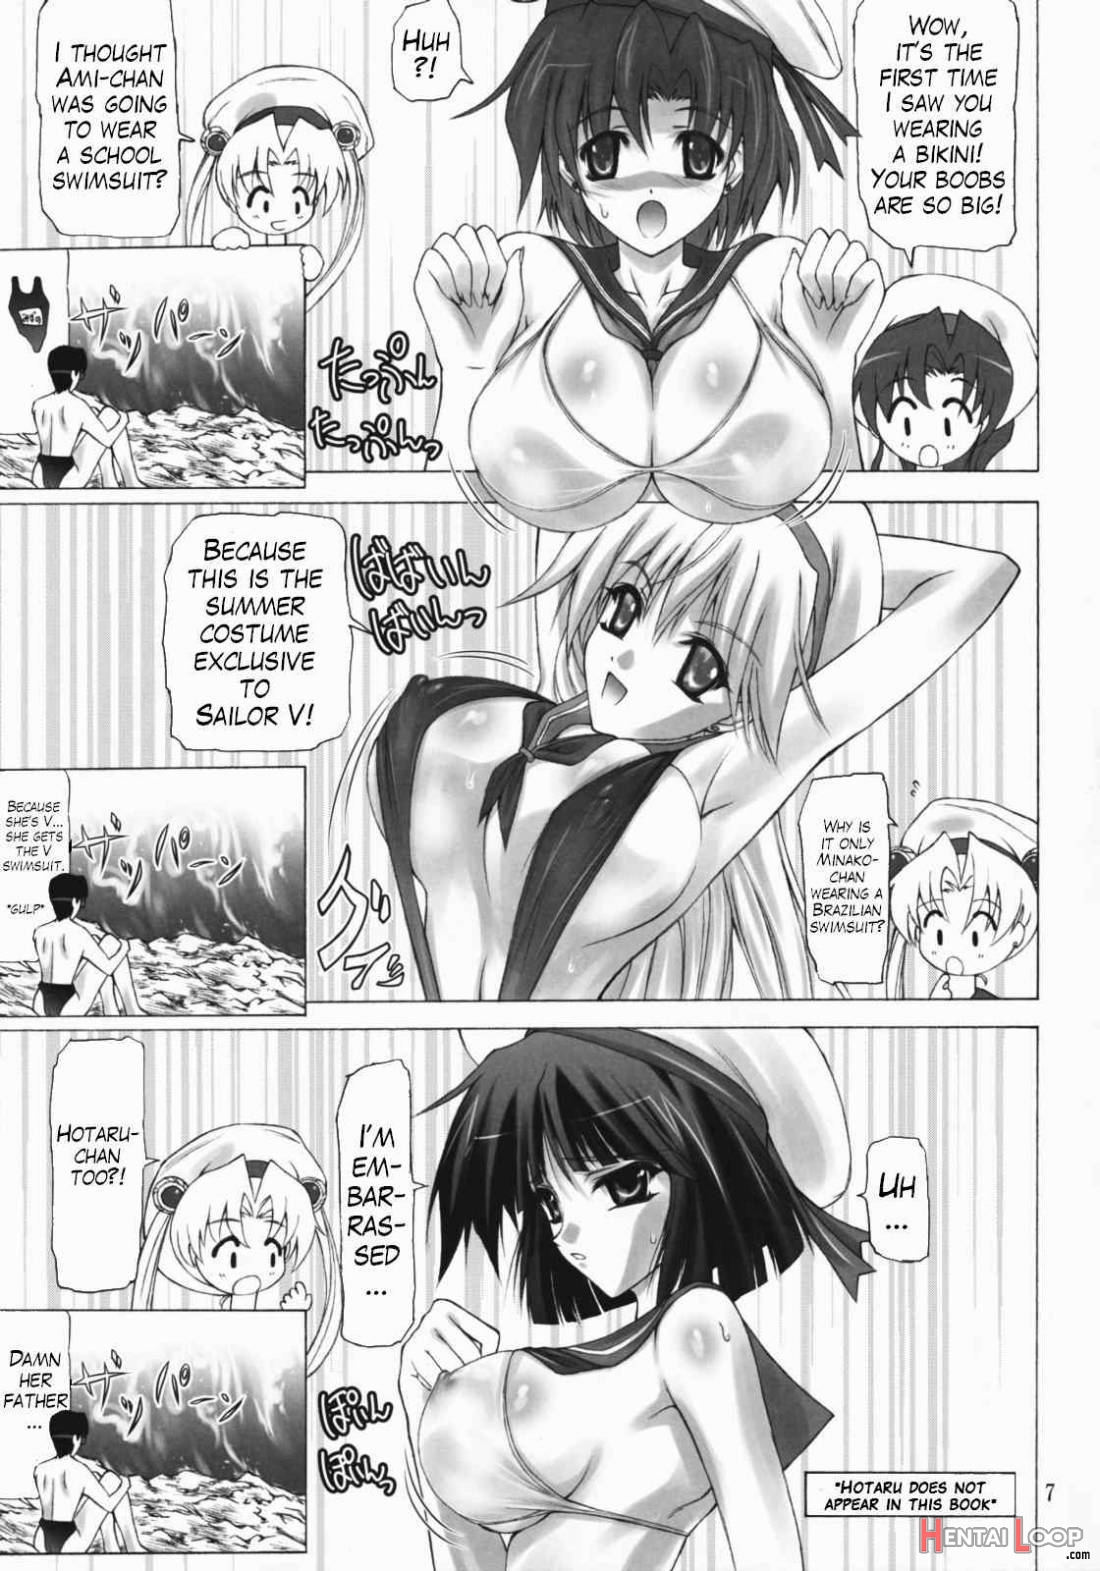 Sailor Mariners Kanzenban page 5